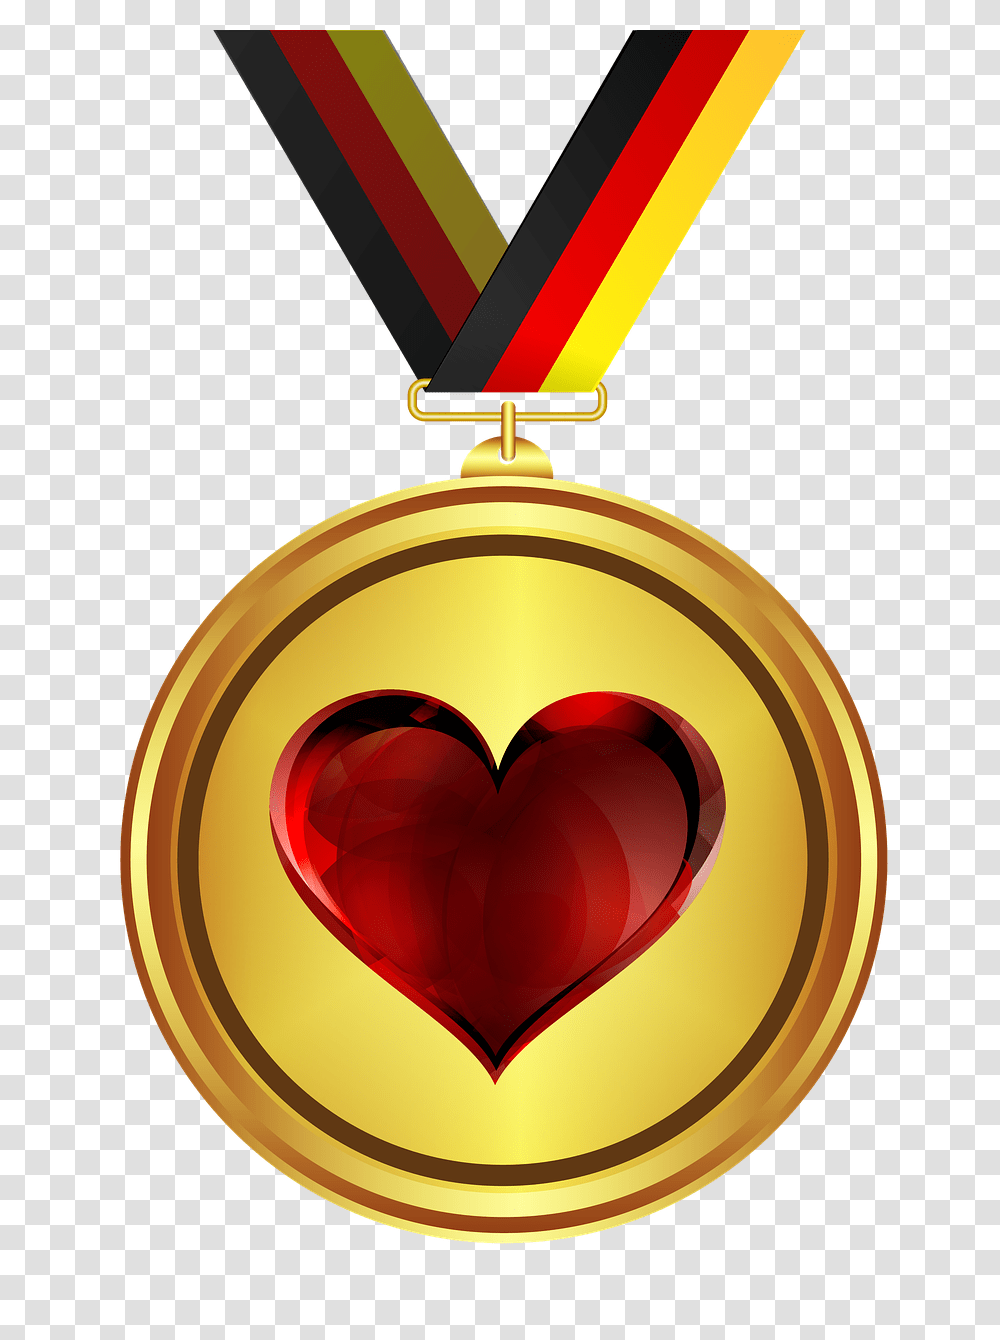 Medal Gold Tape Free Image On Pixabay Background Design For Medal, Trophy, Heart, Gold Medal, Lamp Transparent Png